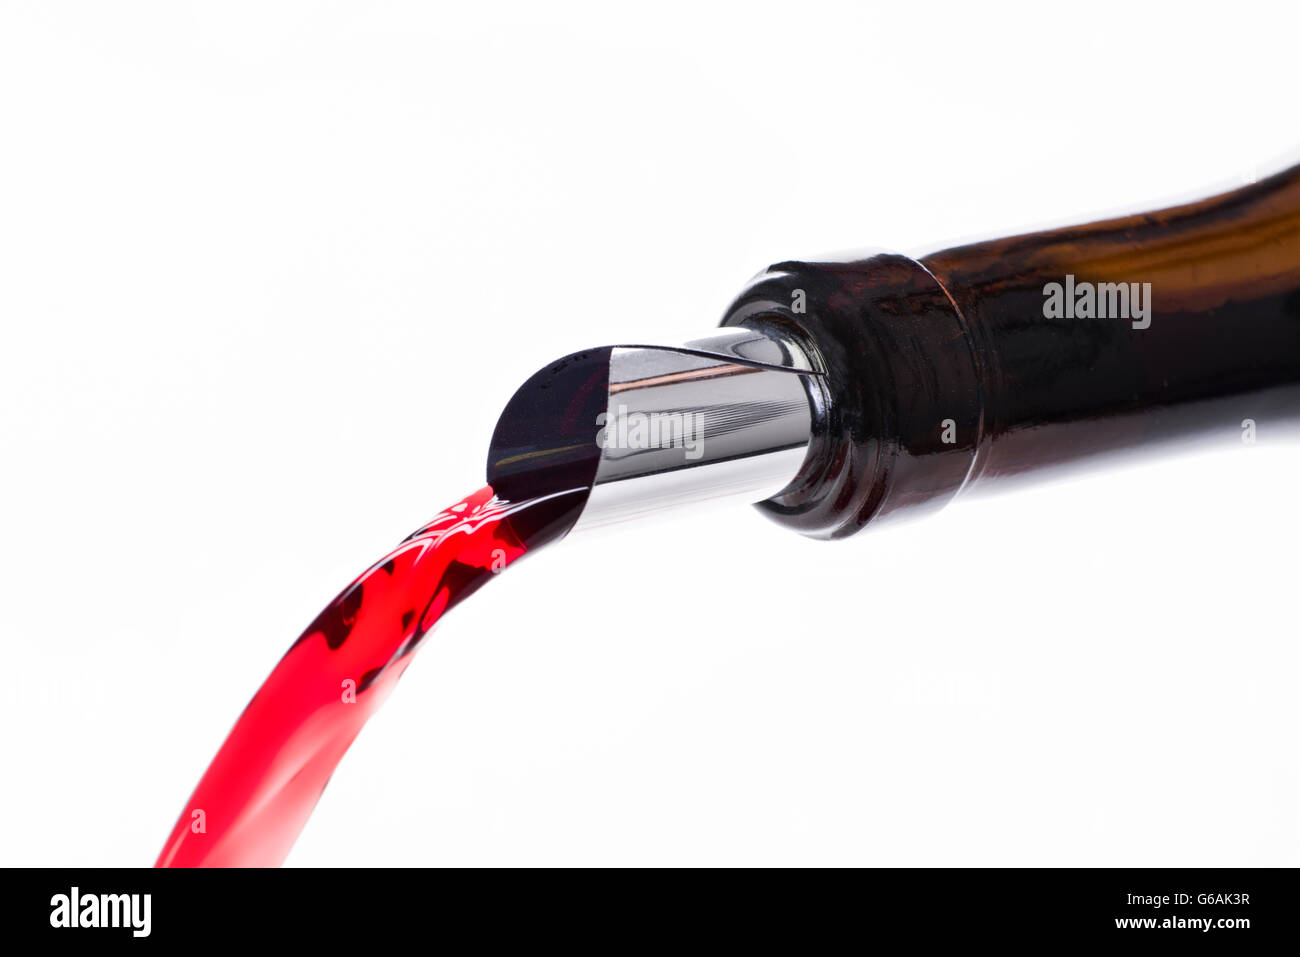 Drop Stop eingelegt in eine Flasche Rotwein, den es zu entrichten